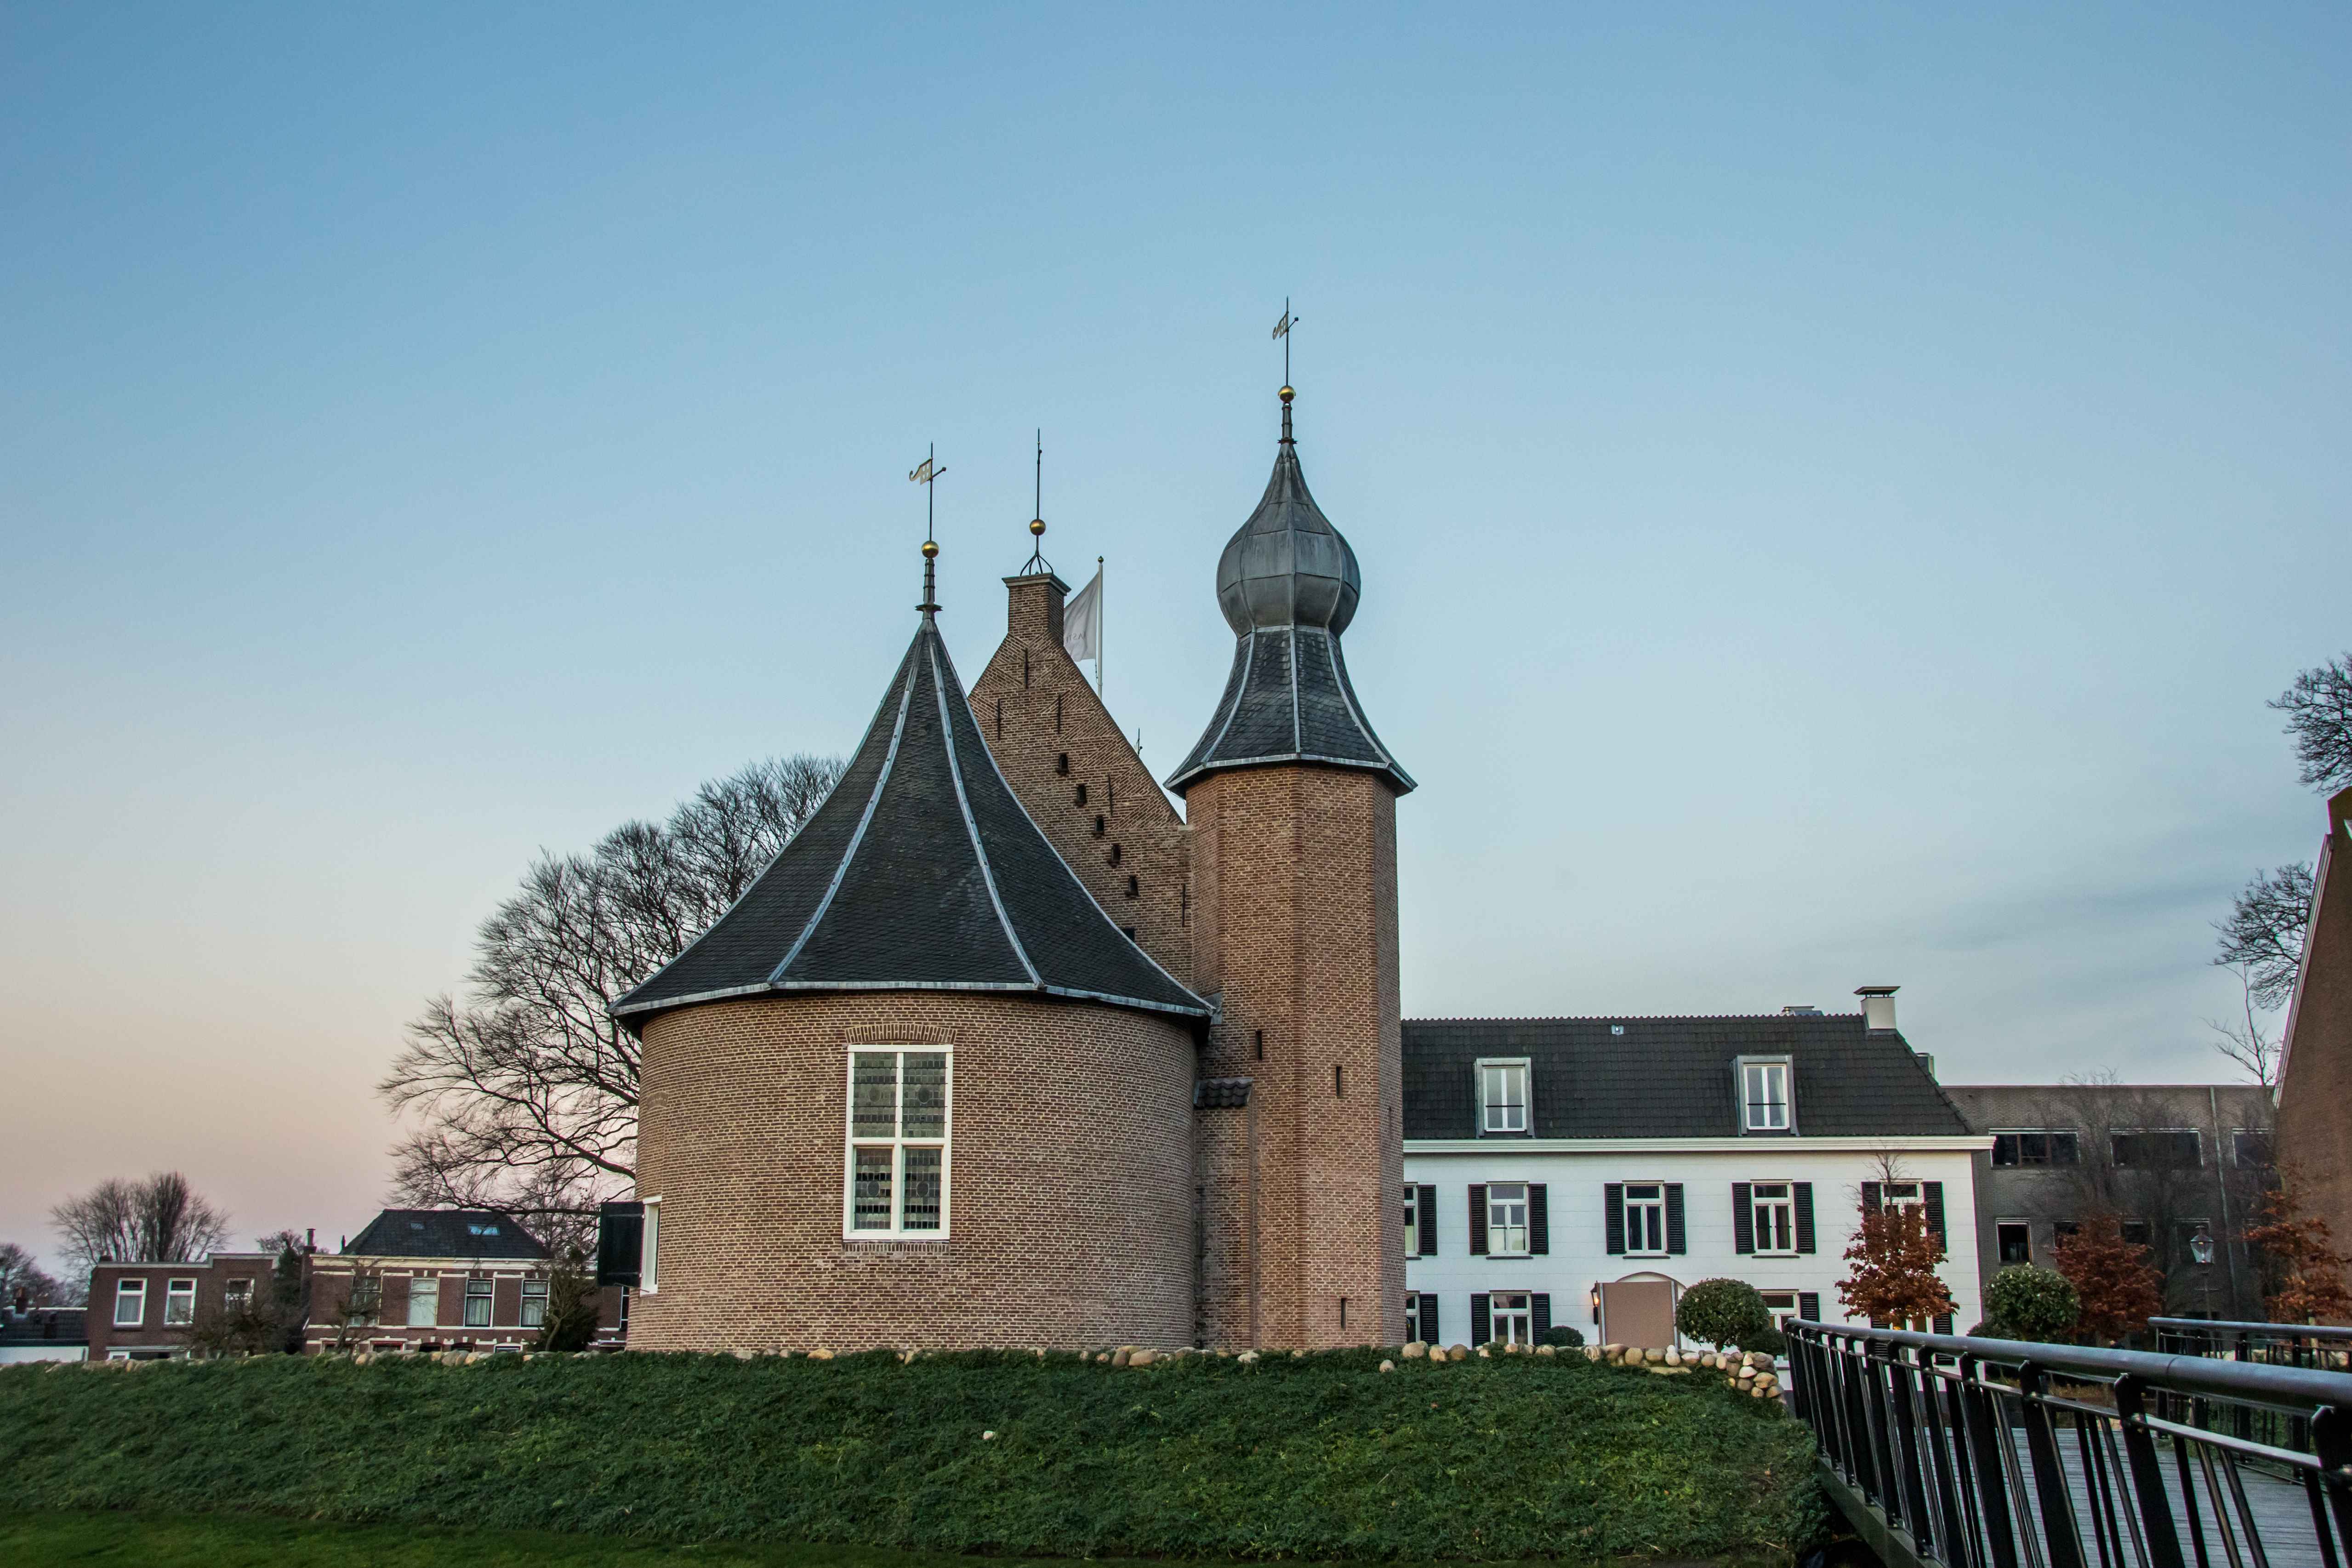 Fletcher Hotels lijft failliet Kasteel Coevorden en bijbehorend Hotel De Vlijt in